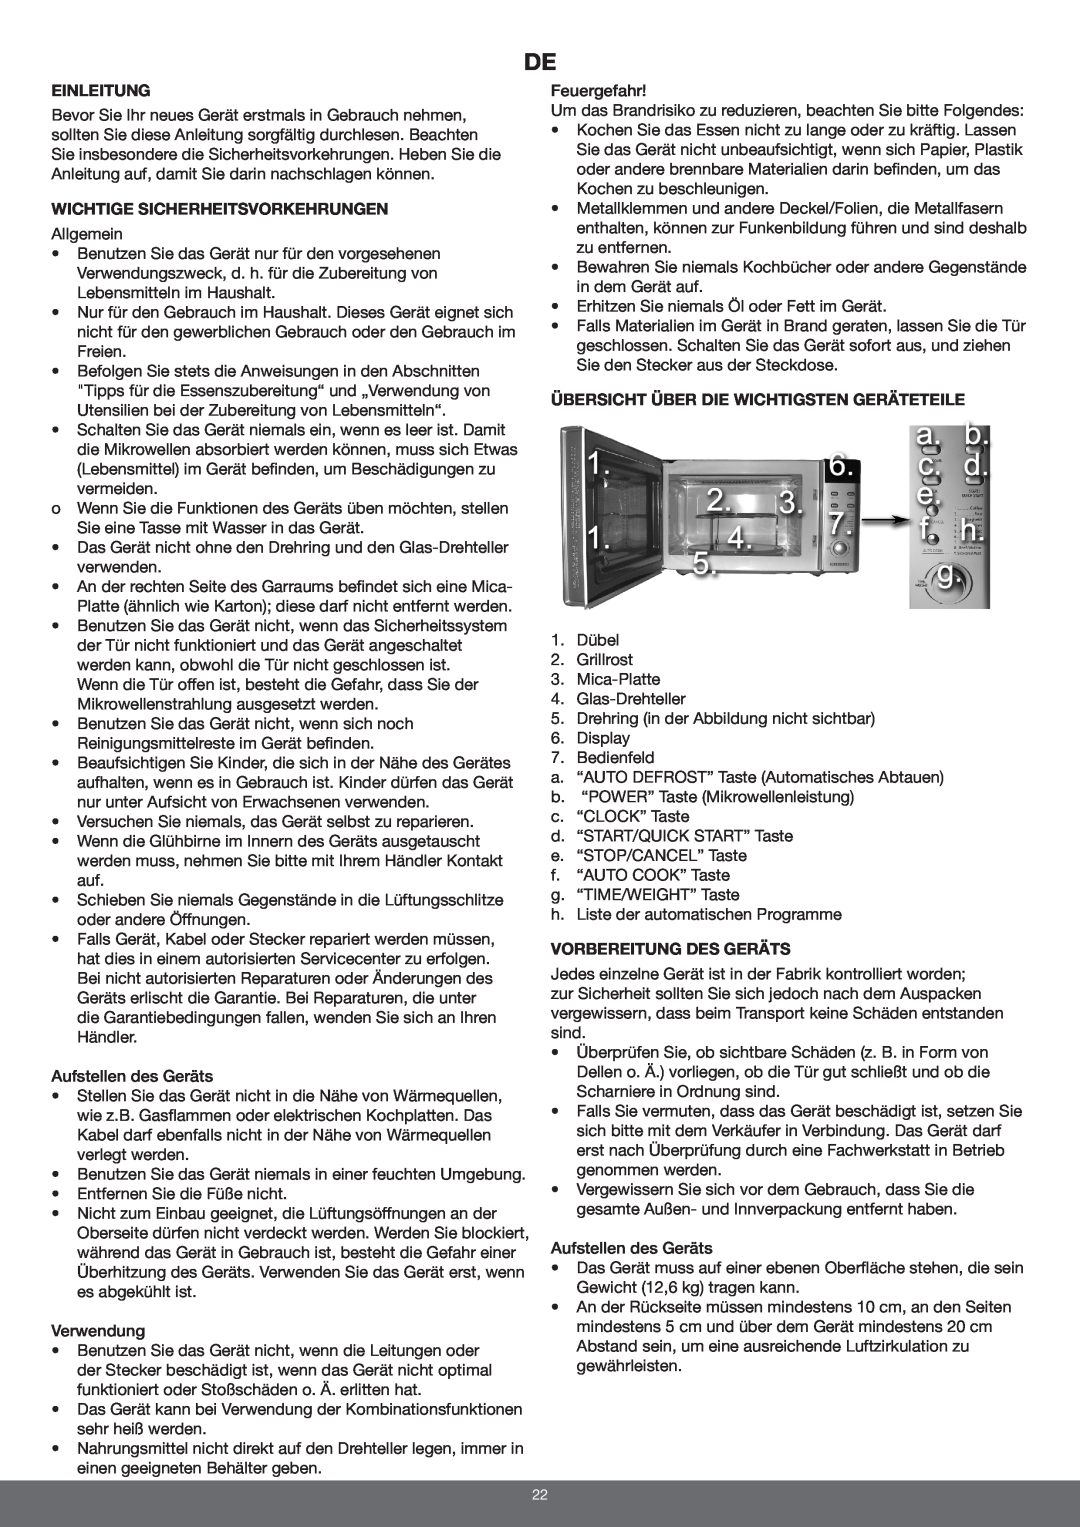 Melissa 653-094 manual Einleitung, Wichtige Sicherheitsvorkehrungen, Übersicht Über Die Wichtigsten Geräteteile 